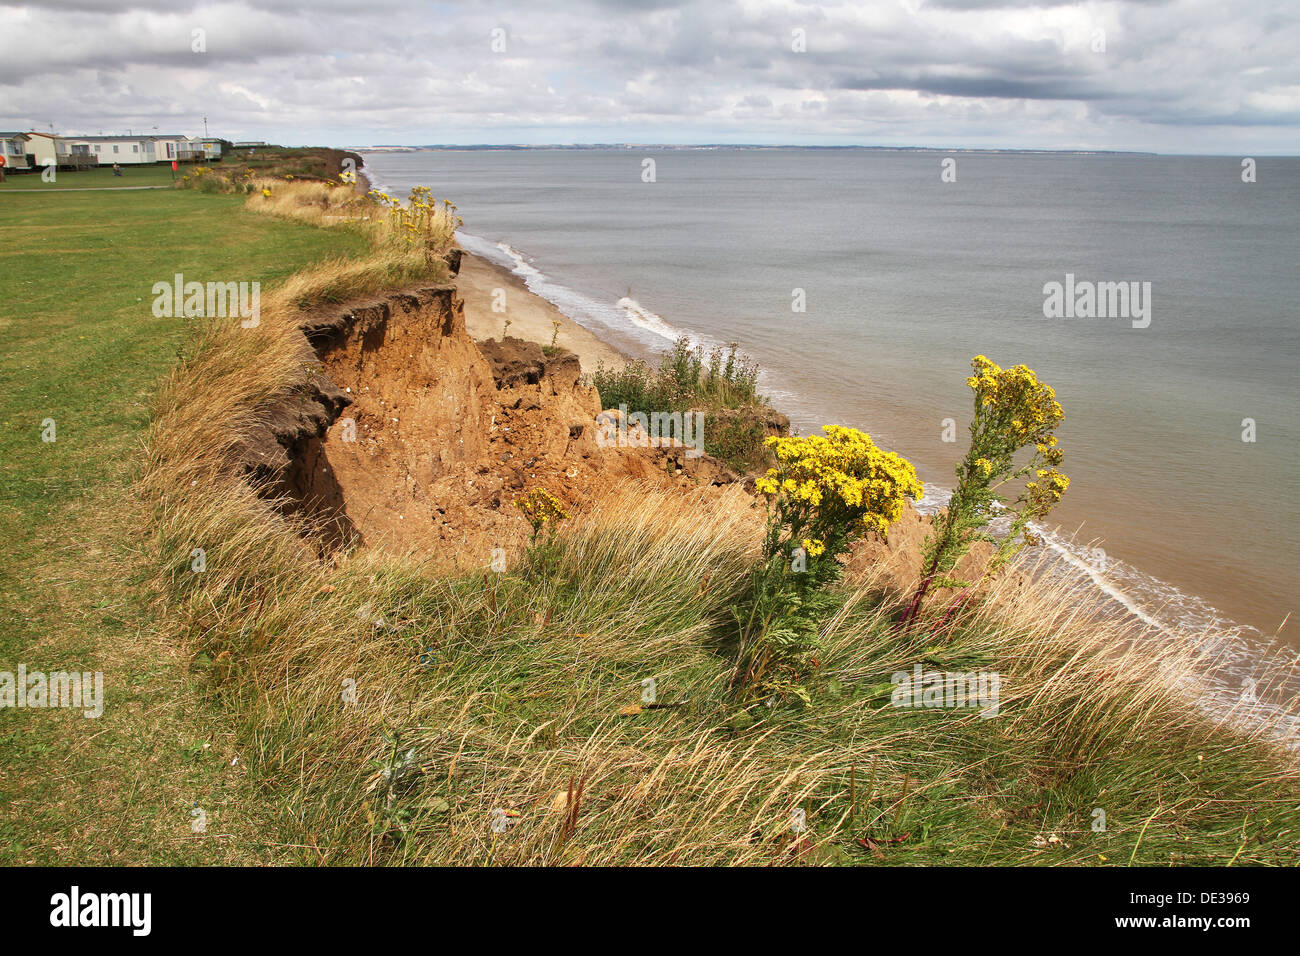 Clay cliff erosion on Yorkshire UK East coast. Stock Photo